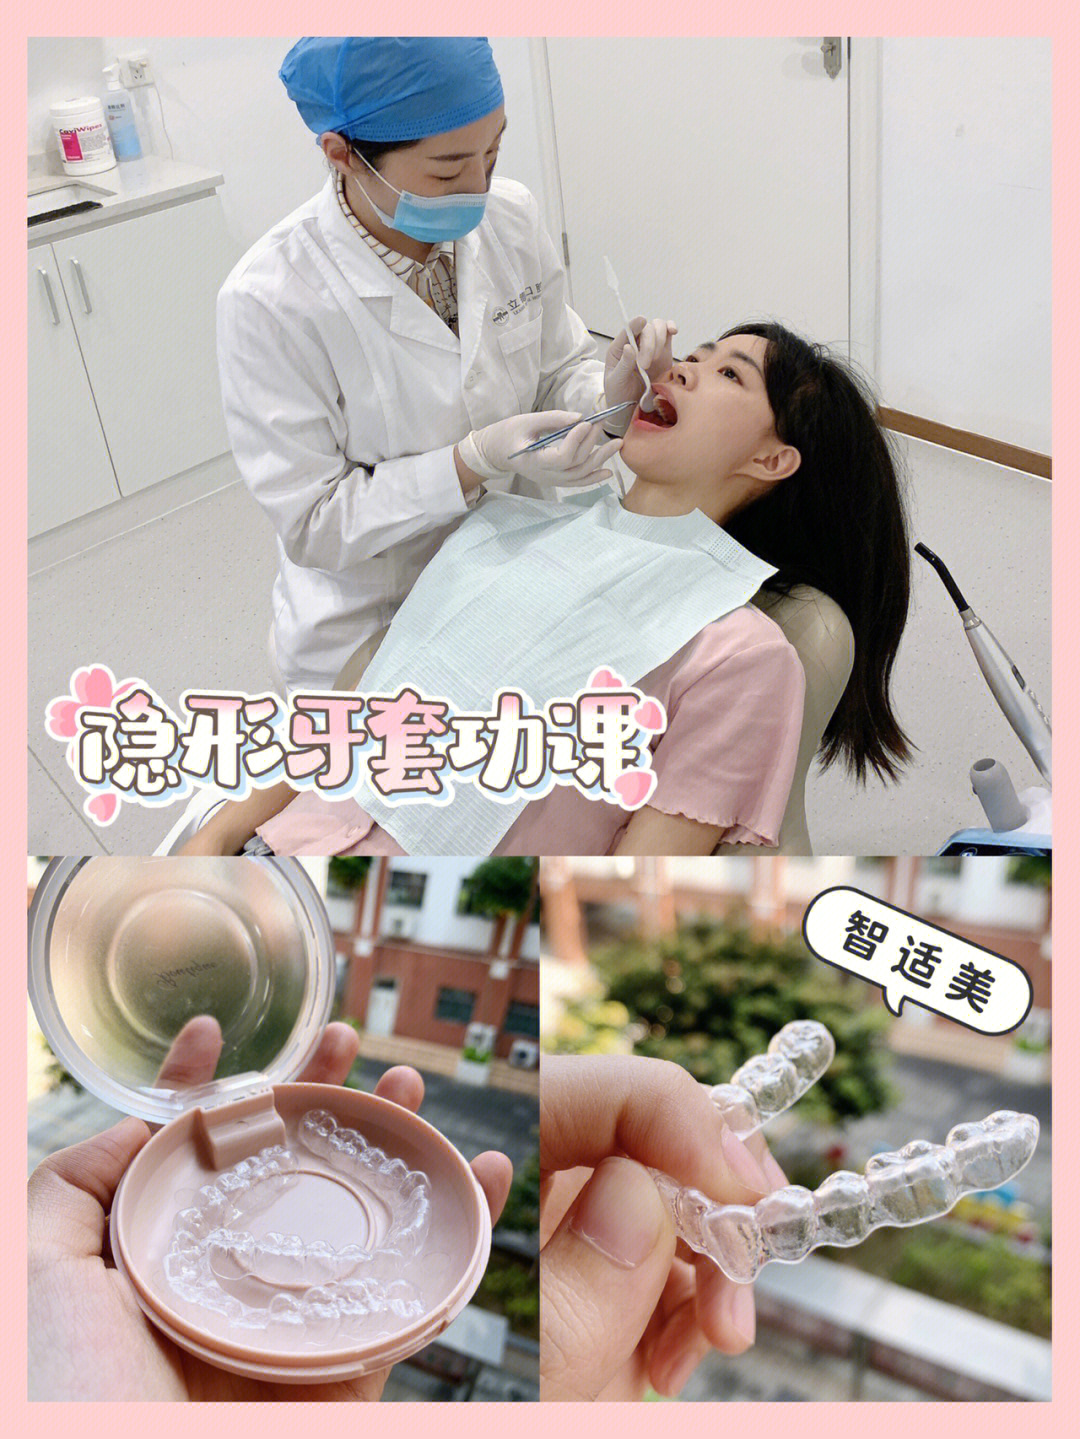 隐形牙套收牙缝过程图图片